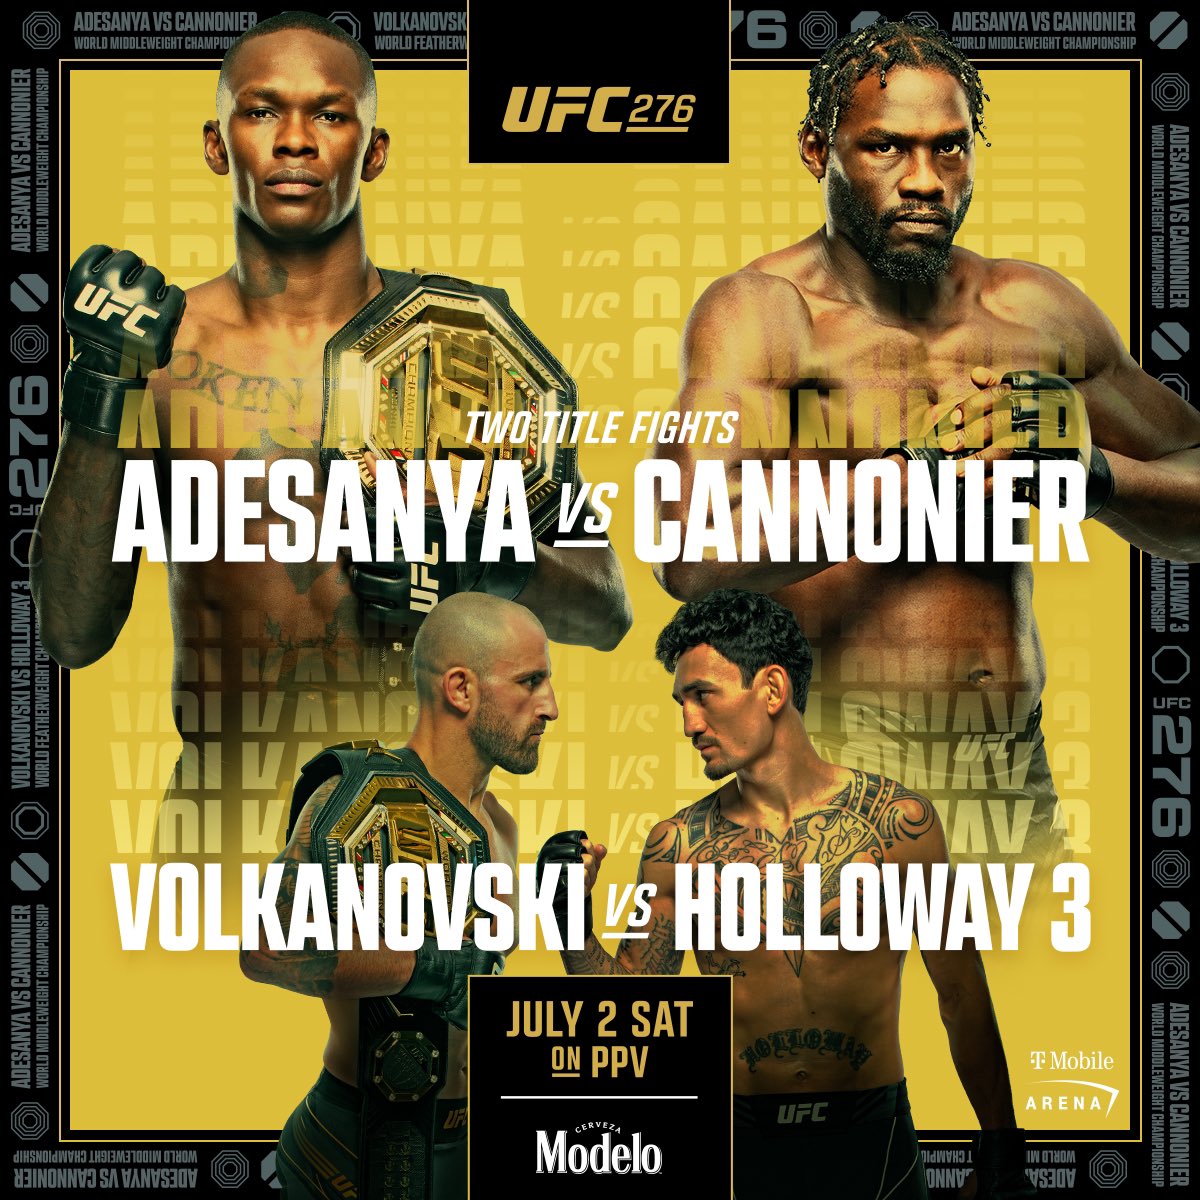 🎥 روابط لمشاهدة عرض UFC276 🔥:

🔗  bit.ly/3AoMBdS

🔗  bit.ly/3bA23t2

🔗 bit.ly/3ycBOkf

مُشاهدة مُمتعة للجميع 🍿🤍

#UFC275